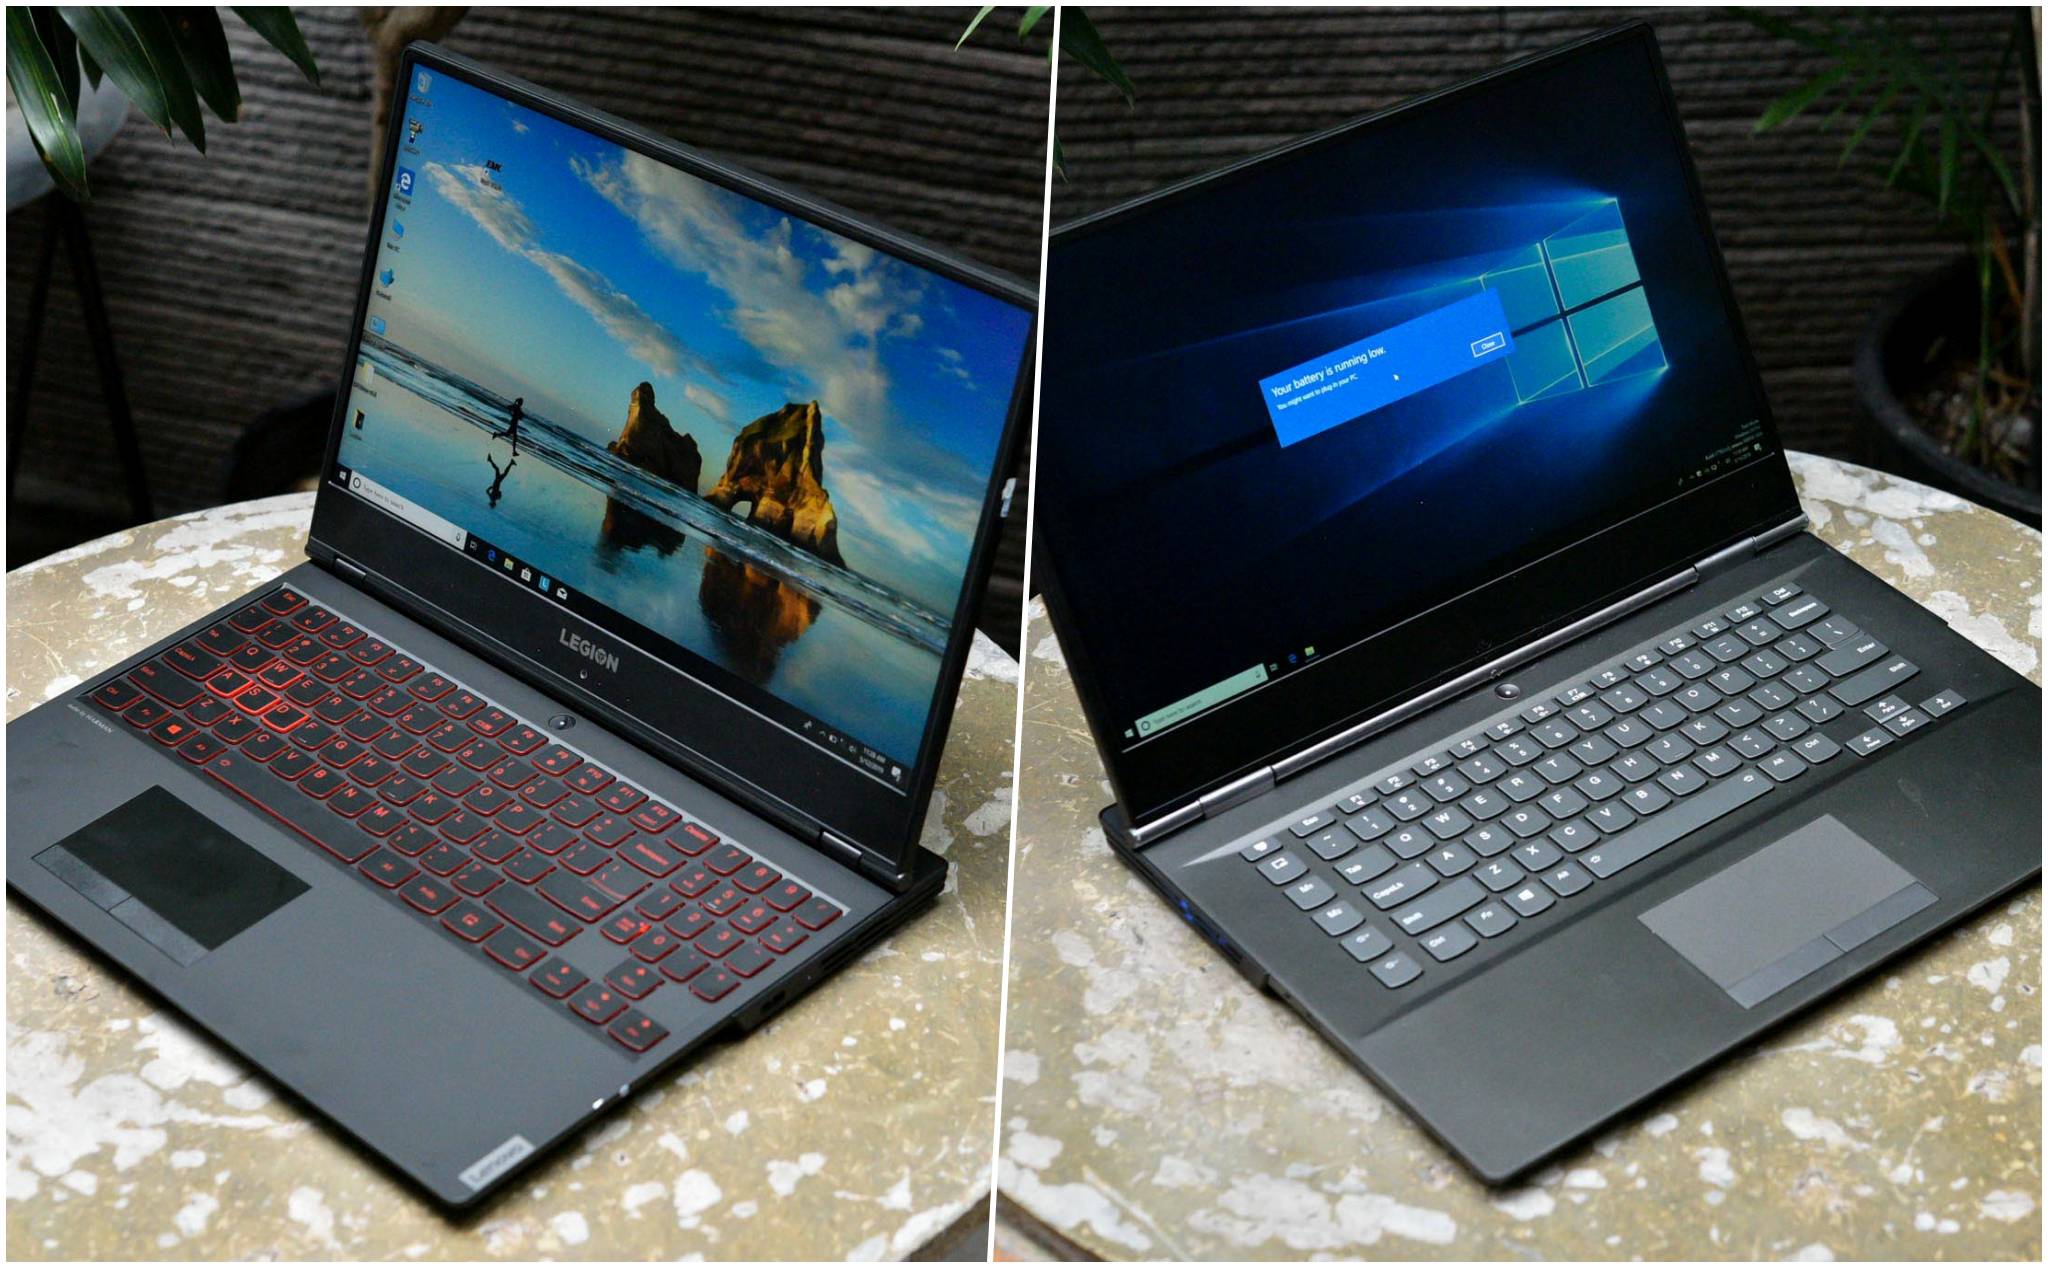 Lenovo ra mắt 3 laptop gaming mới: L340 thiết kế "văn phòng", Legion Y540/Y740 nâng cấp cấu hình